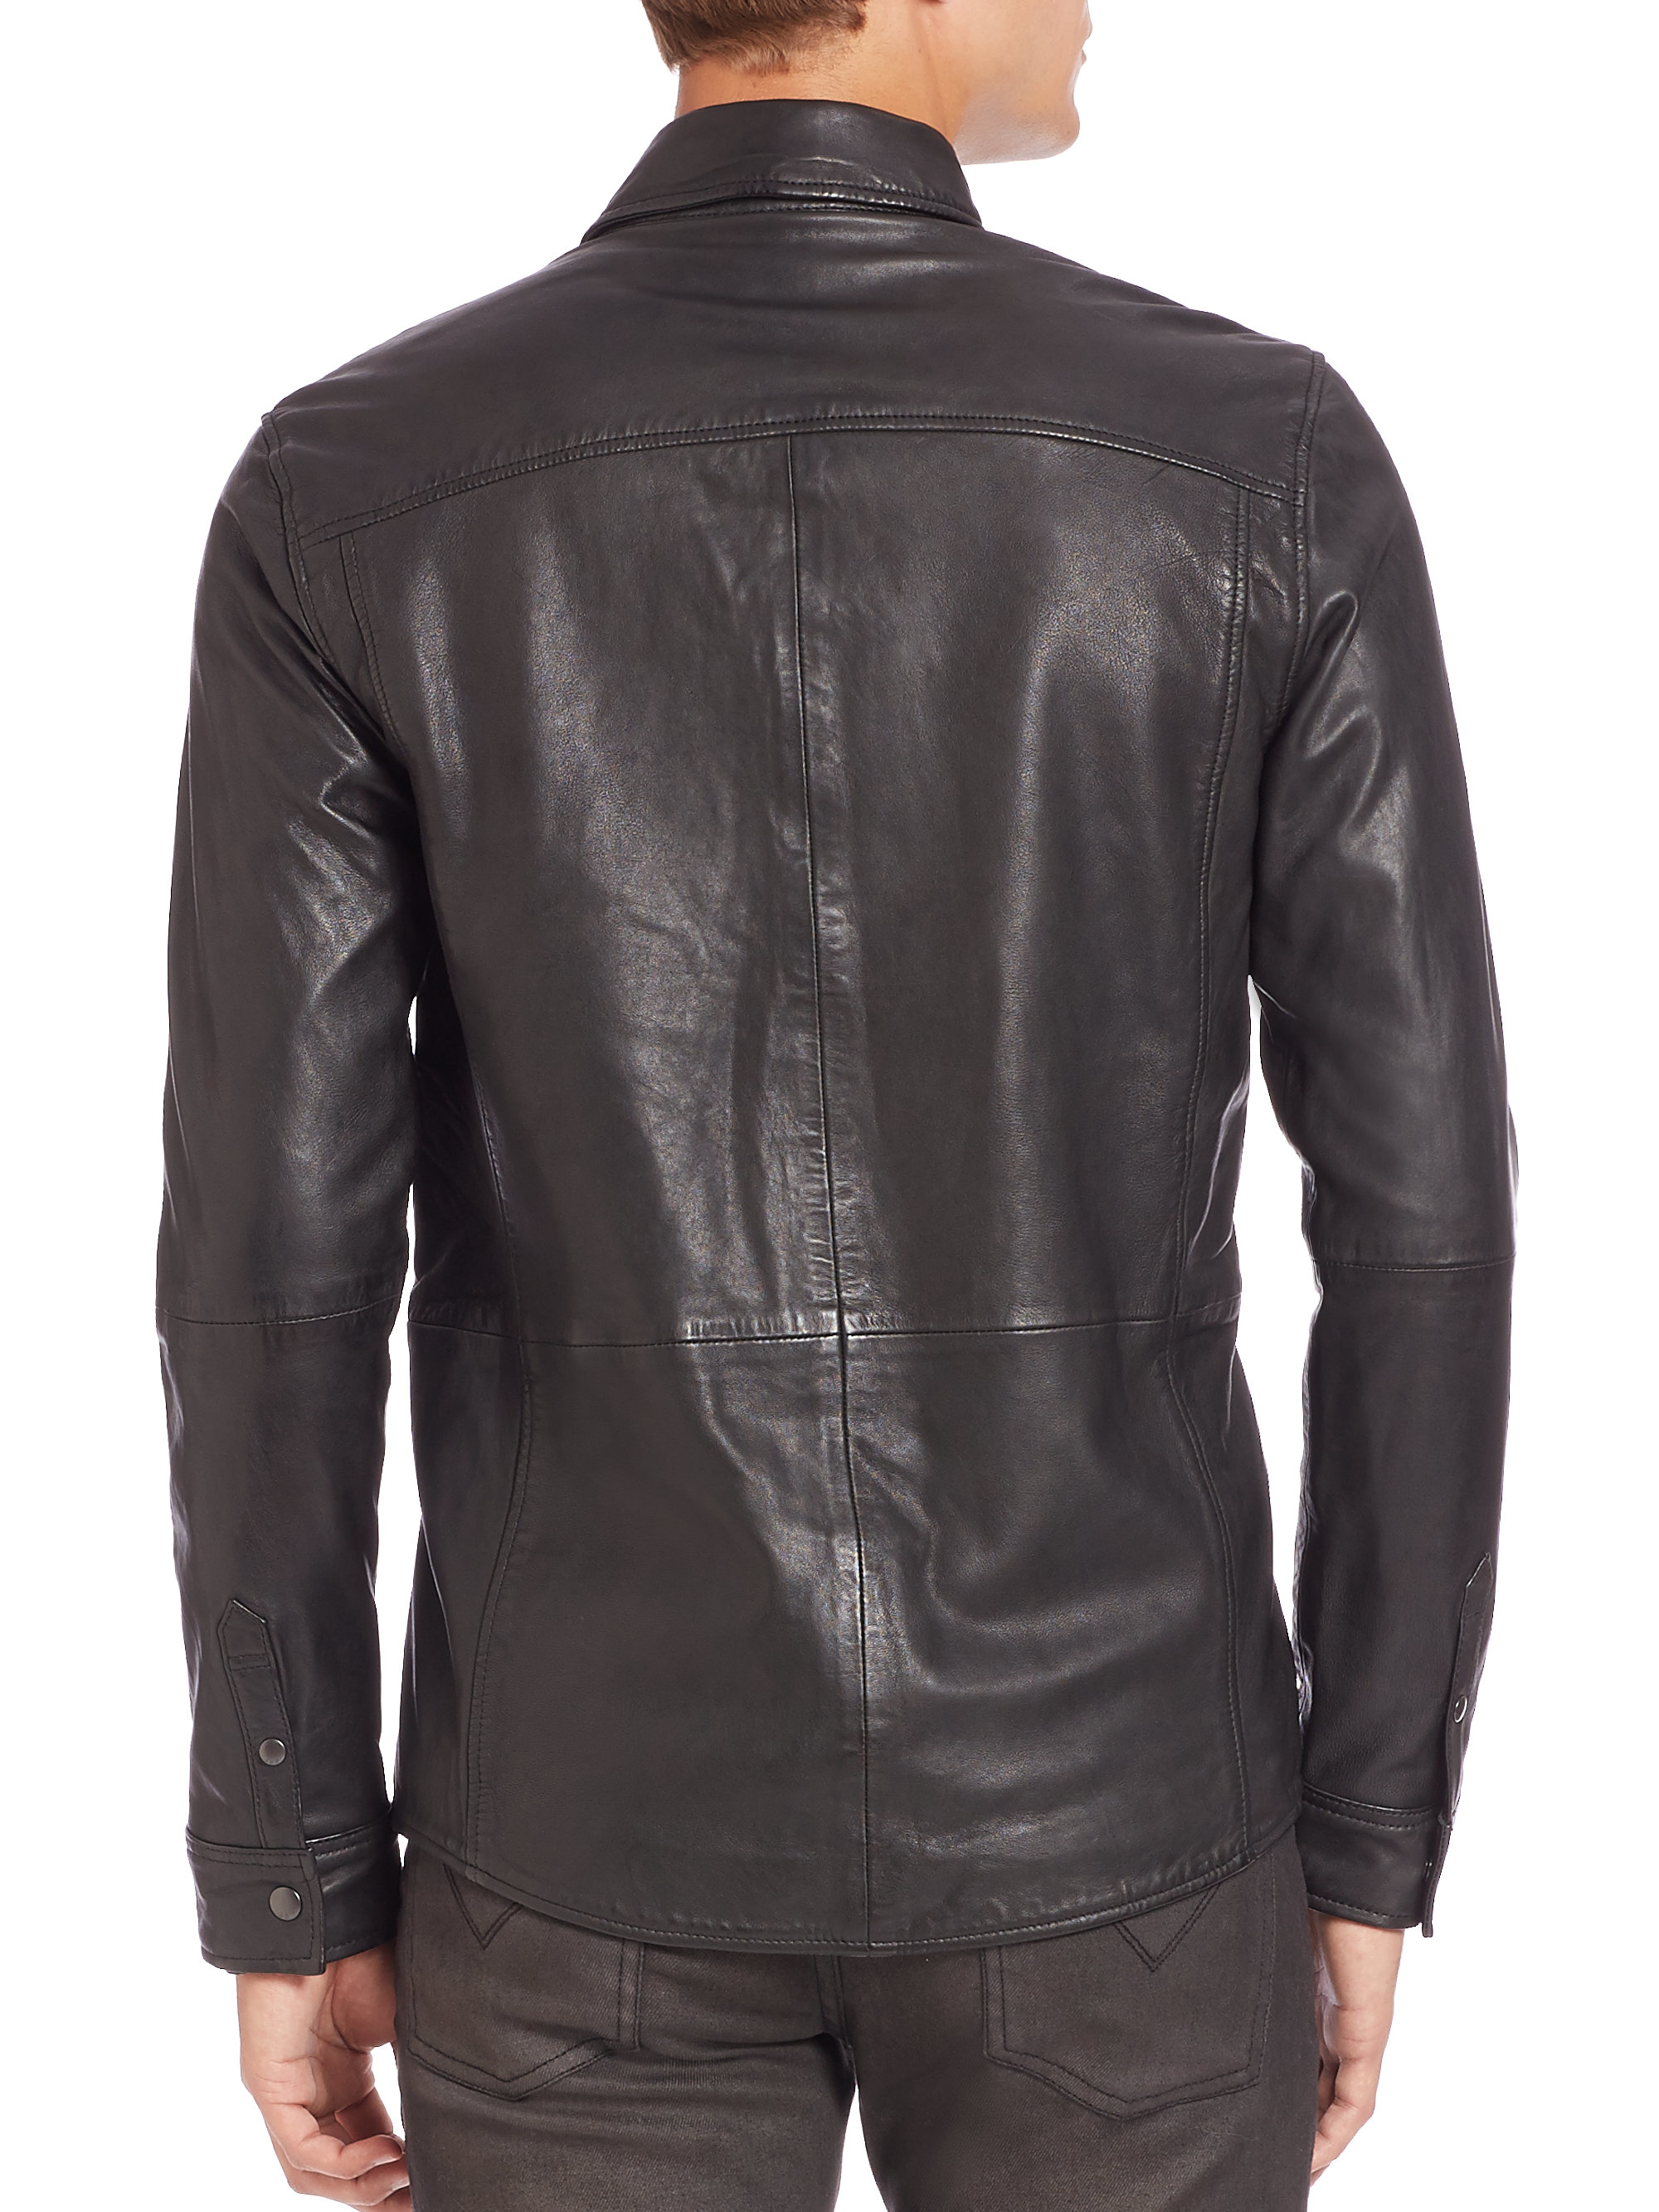 John Varvatos Leather Shirt Jacket in Black for Men - Lyst